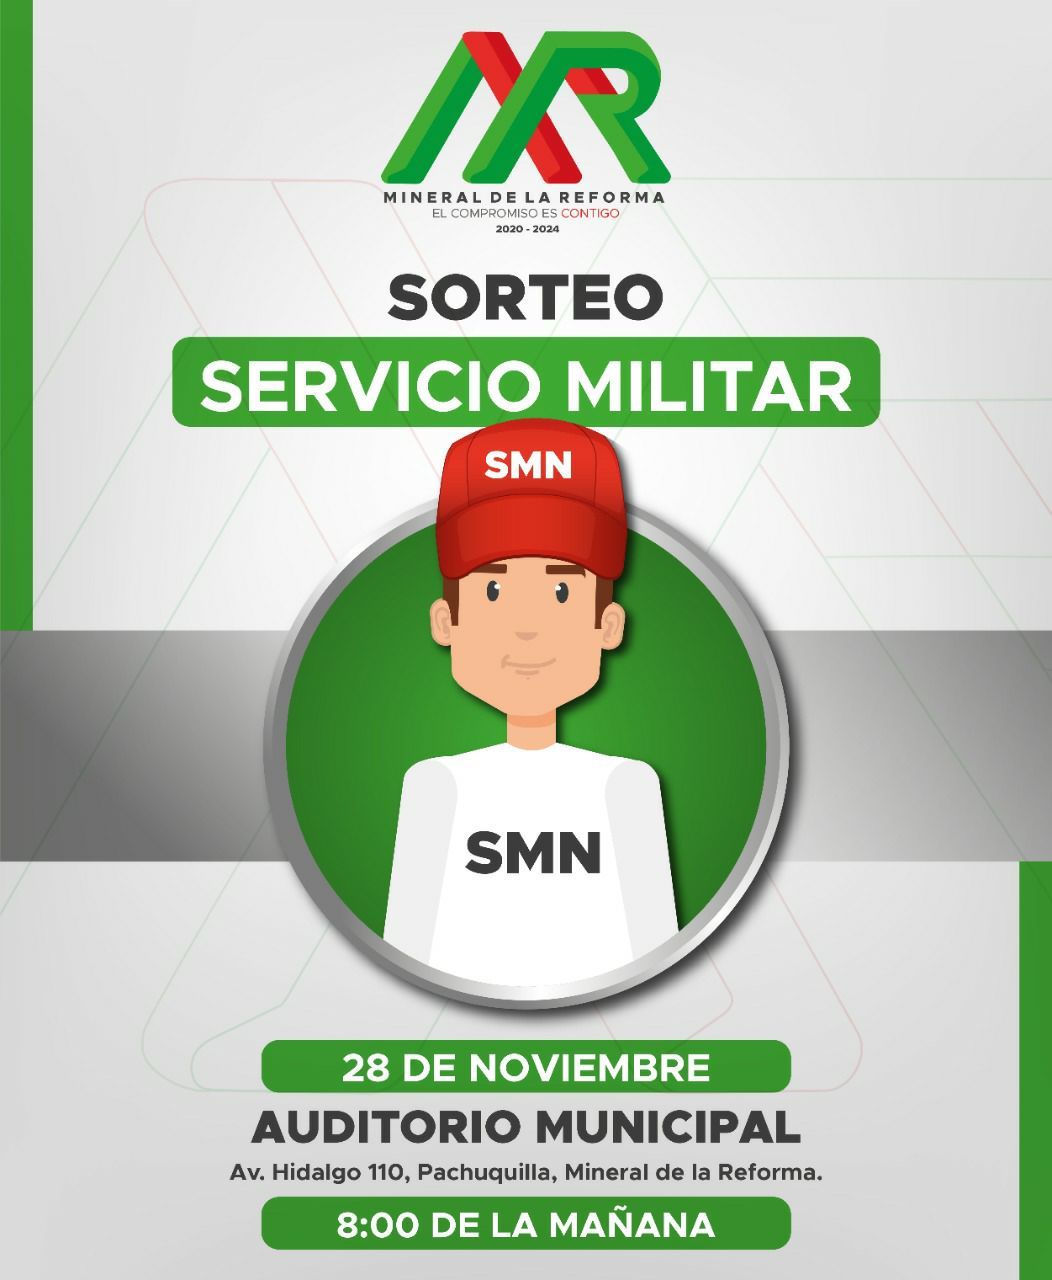 Sorteo para el Servicio Militar en Mineral de la Reforma será el 28 de noviembre